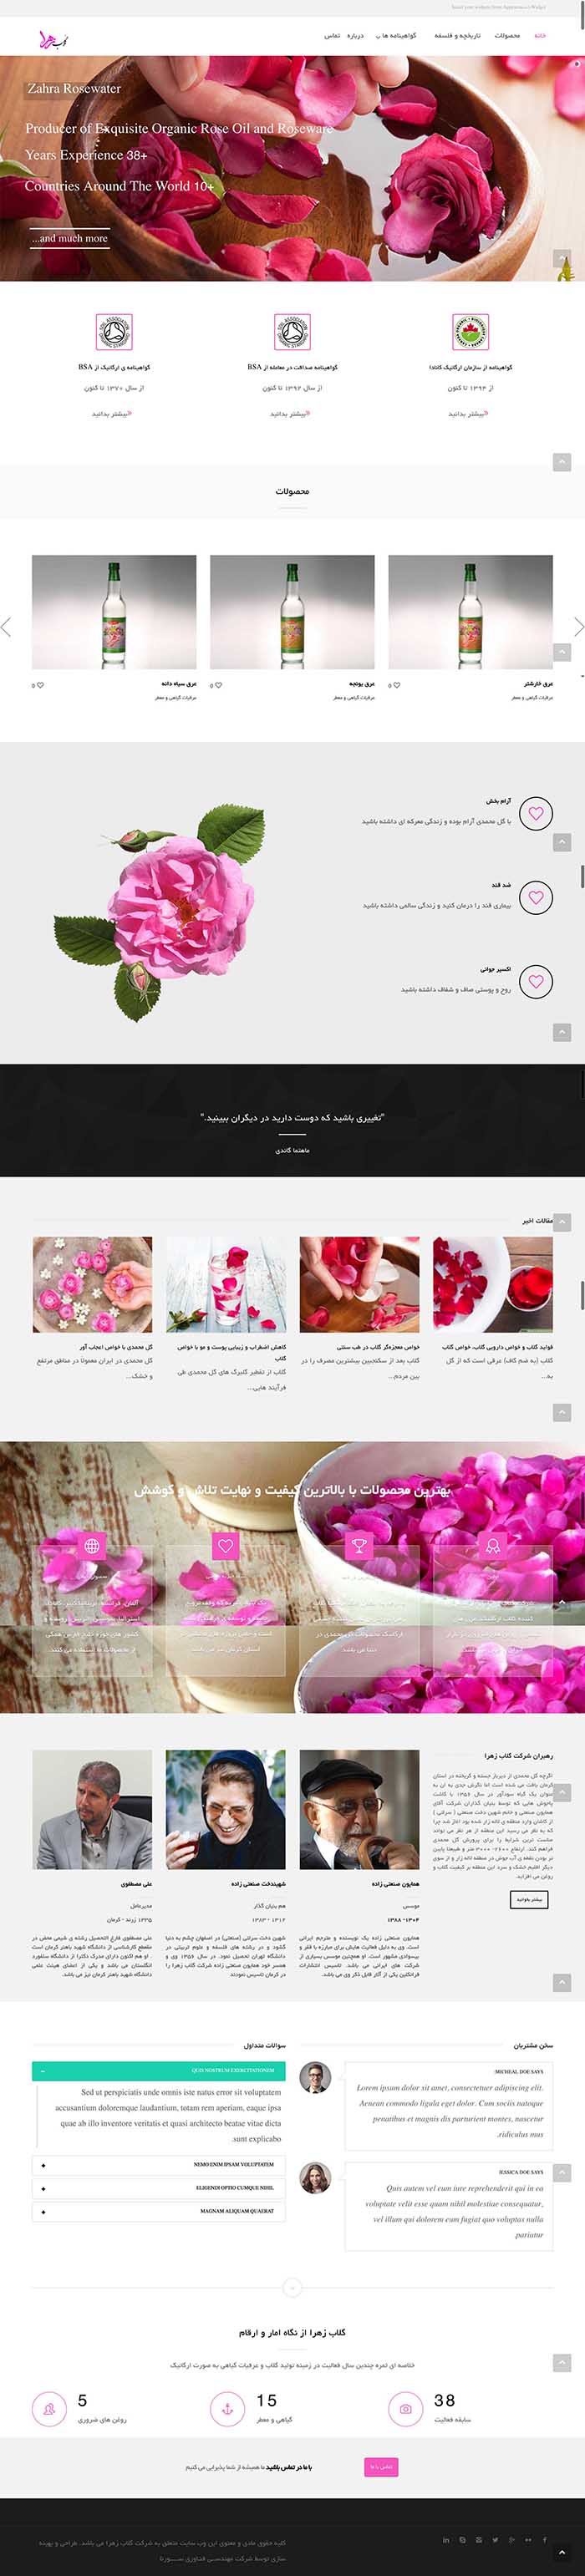 طراحی سایت کارخانه گلاب زهرا توسط شرکت طراحی سایت سورنا در کرمان